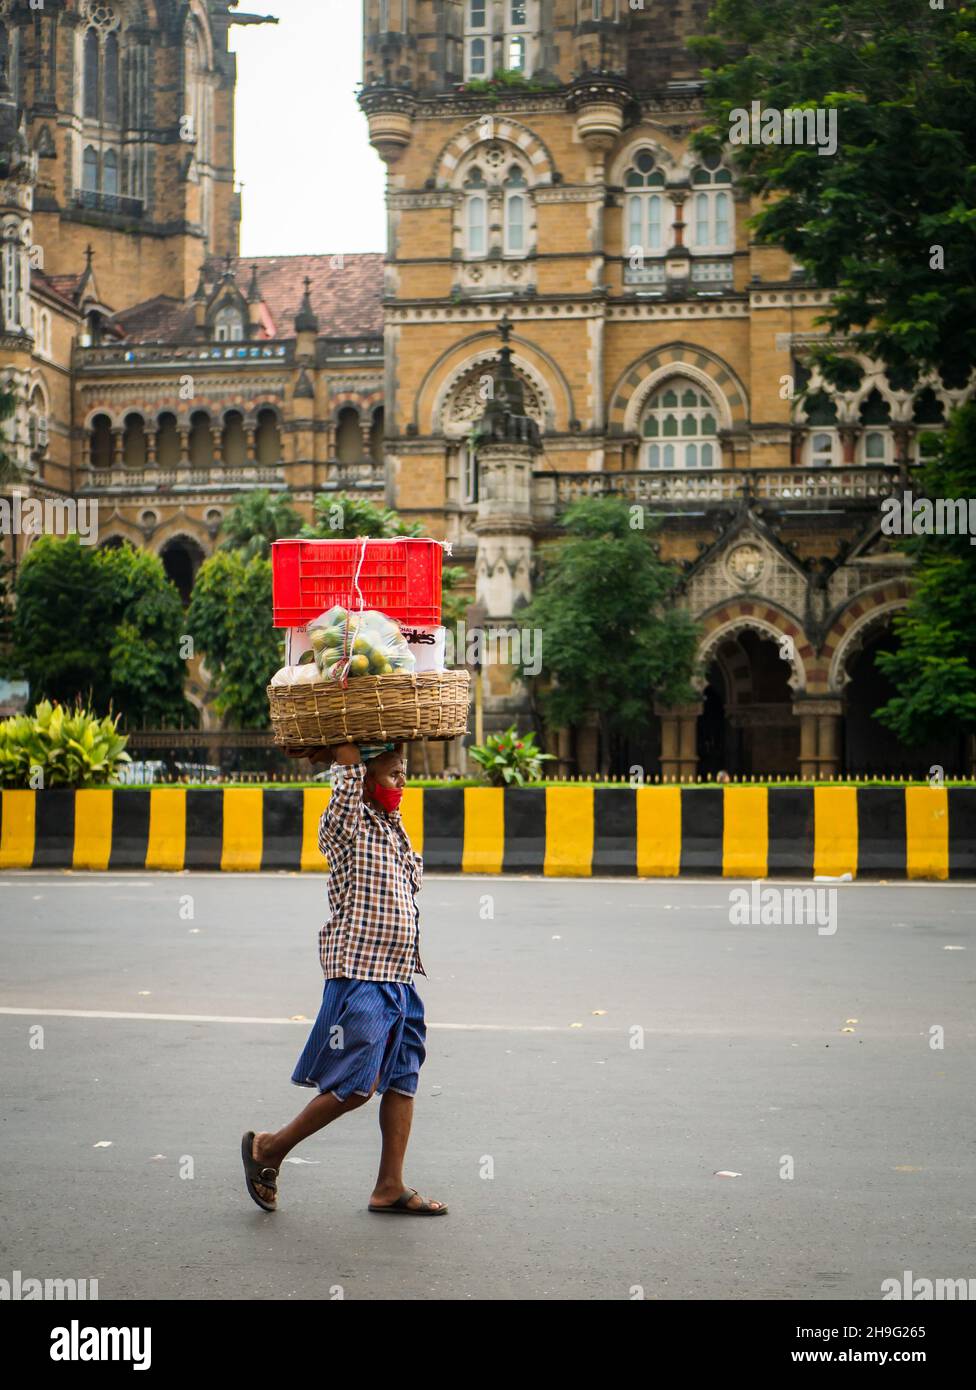 MUMBAI, INDIA - 2 de octubre de 2021 : Portero no identificado que usa una máscara covid-19 que transporta el carro de frutas en la estación CST, Mumbai Foto de stock